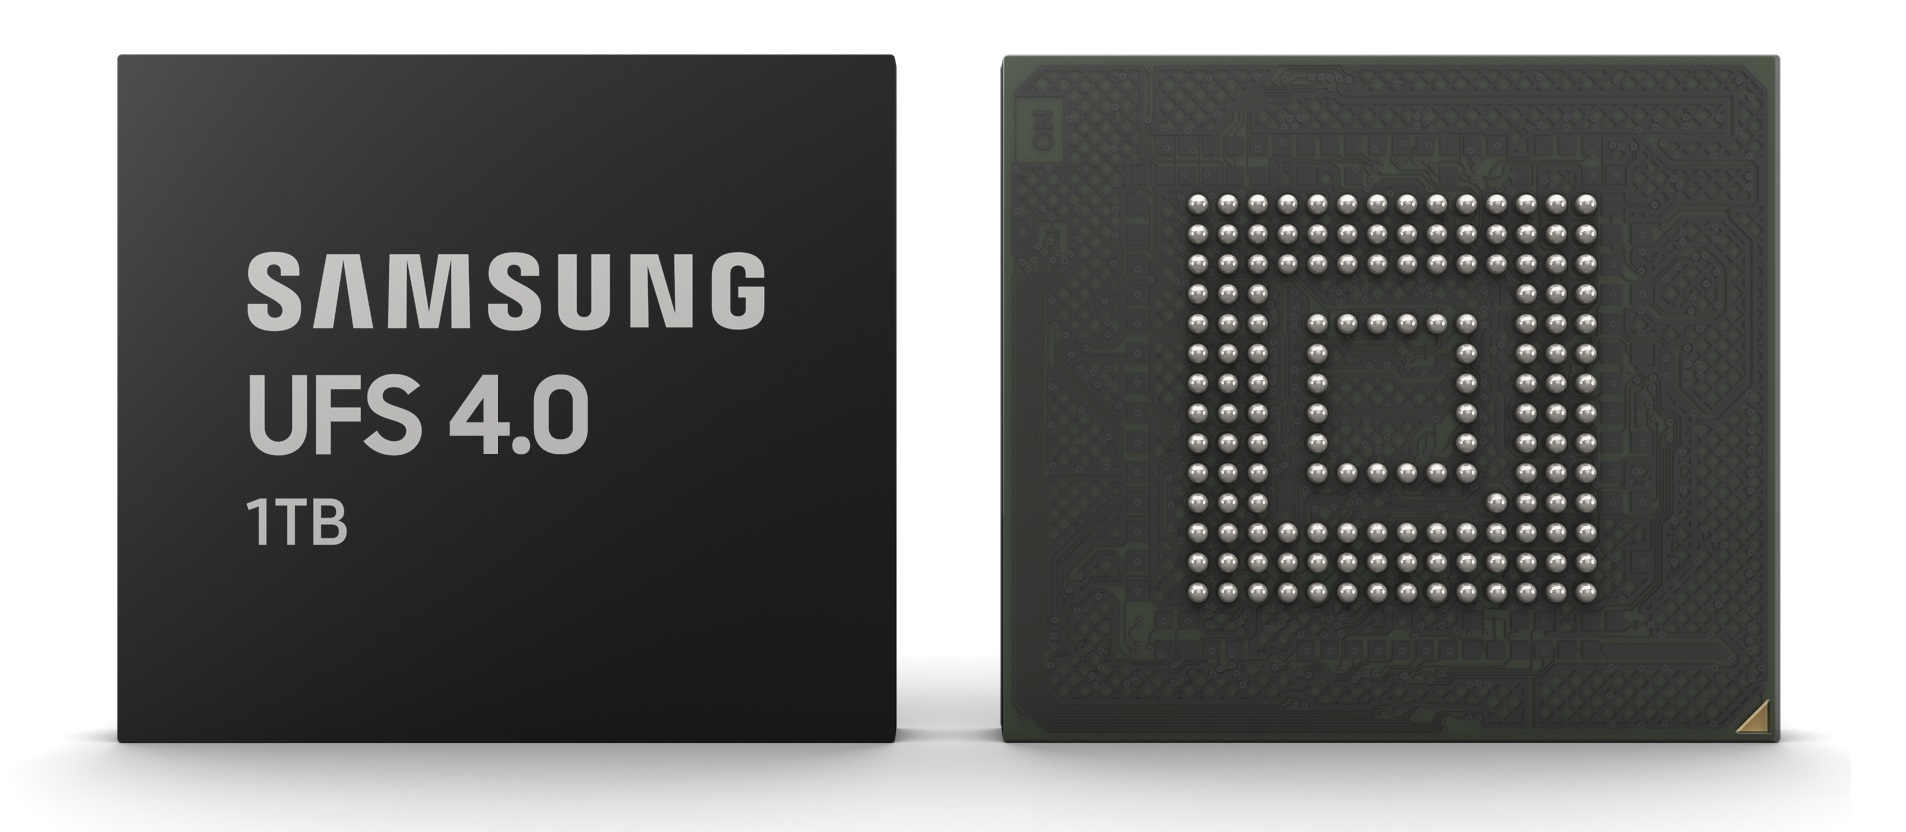 Samsung kündigt Flash-Speicherstandard UFS 4.0 an